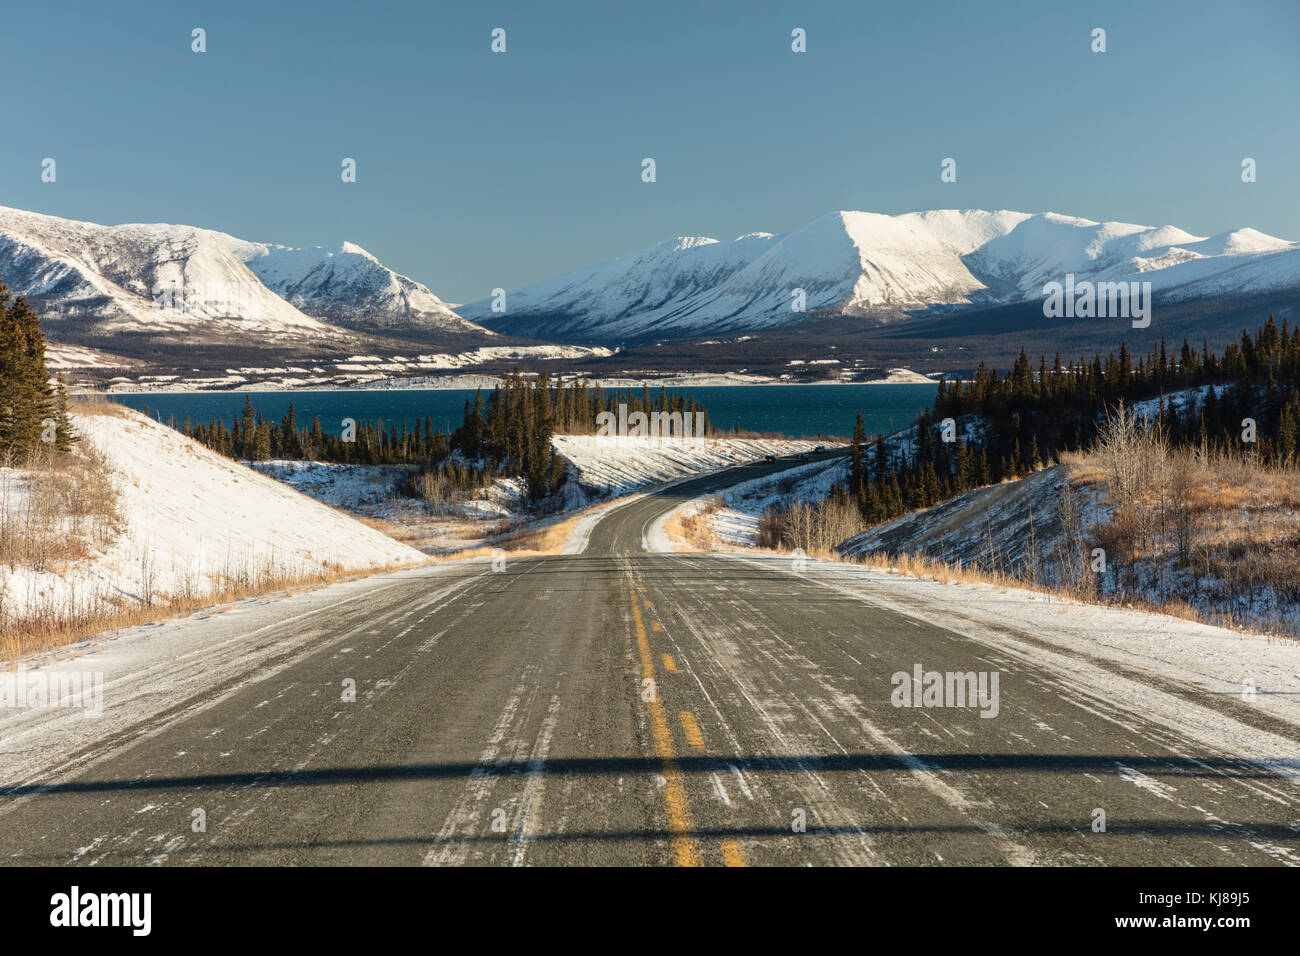 L'autostrada dell'Alaska si snoda accanto al lago Kluane e alle montagne della catena Ruby nel territorio dello Yukon. Foto Stock